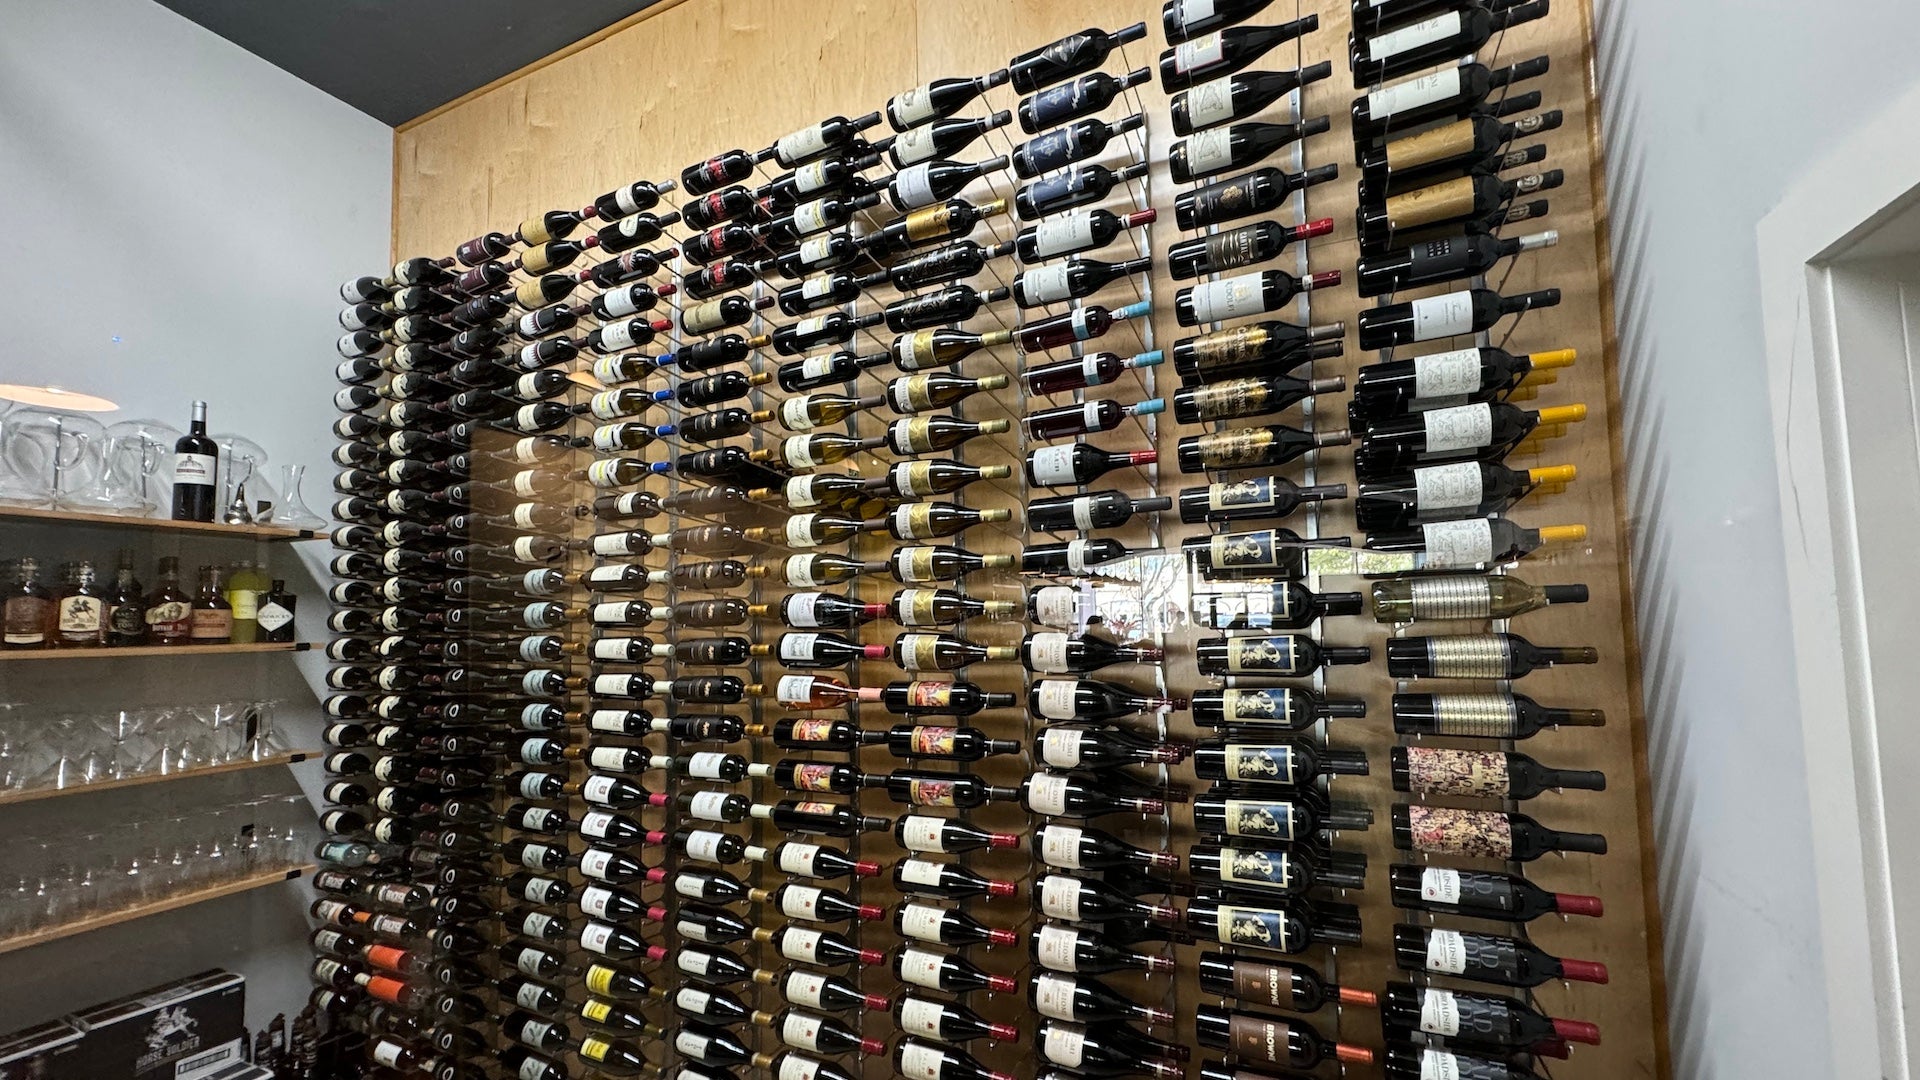 Wall of wine bottles